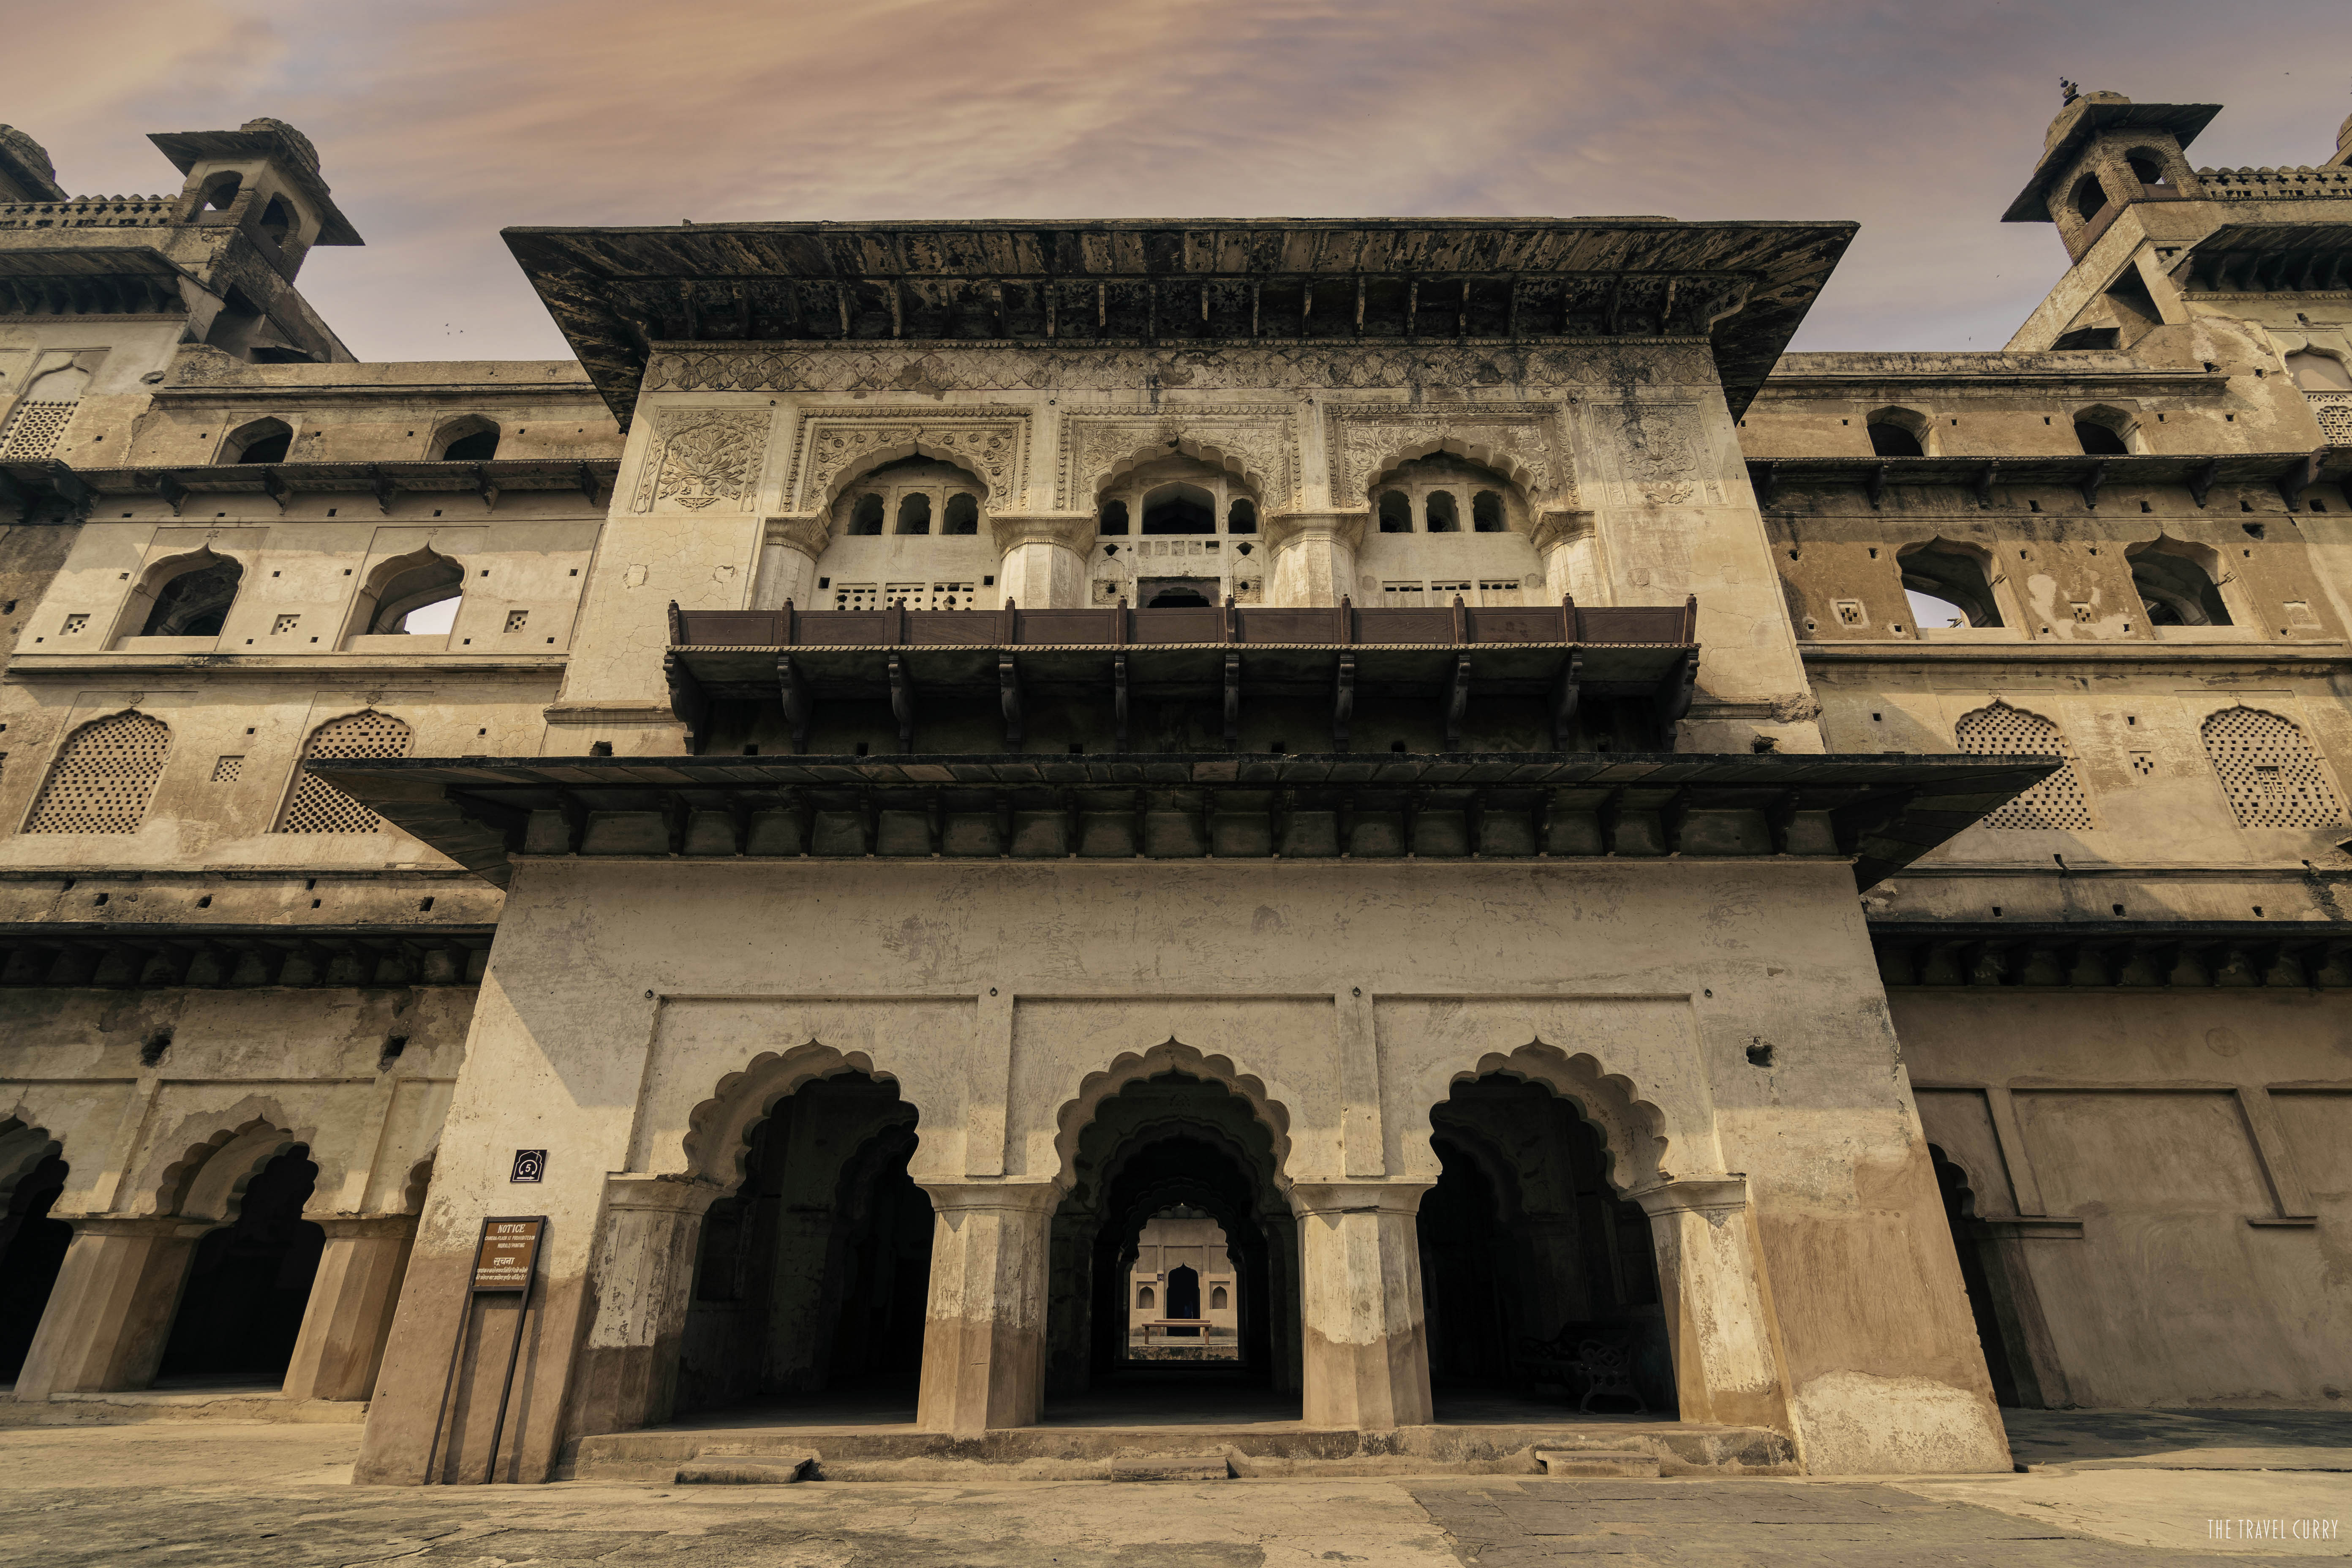 Raja Mahal in Orchha Fort